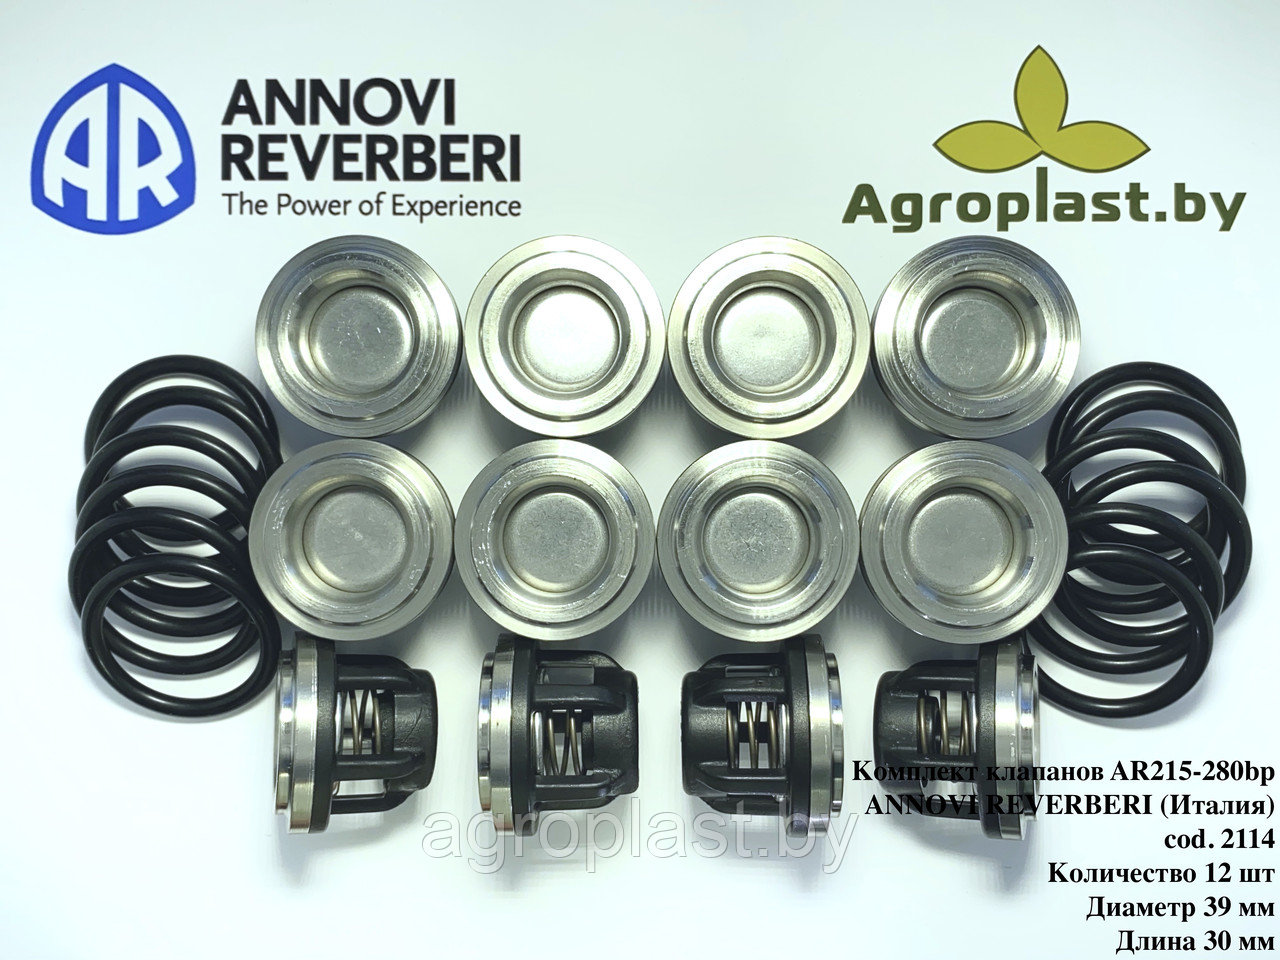 Комплект клапанов для насоса Annovi Reverberi AR 2114